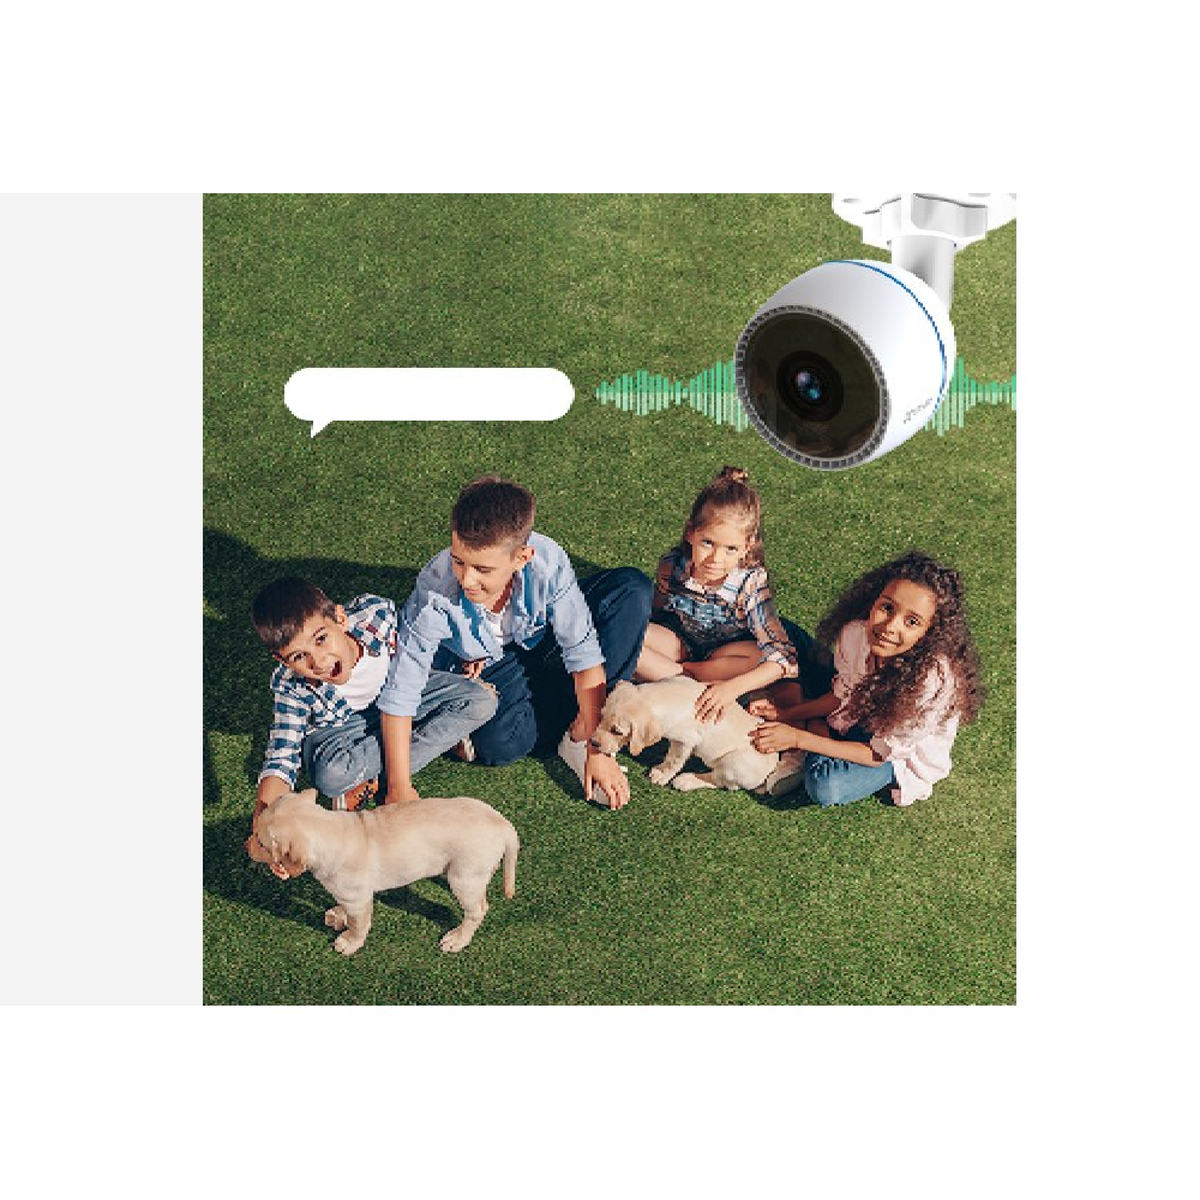 أيزفيز كاميرا مراقبة منزلية ذكية H3c، واي فاي، لون أبيض، CS-H3c-R100-1K2WF